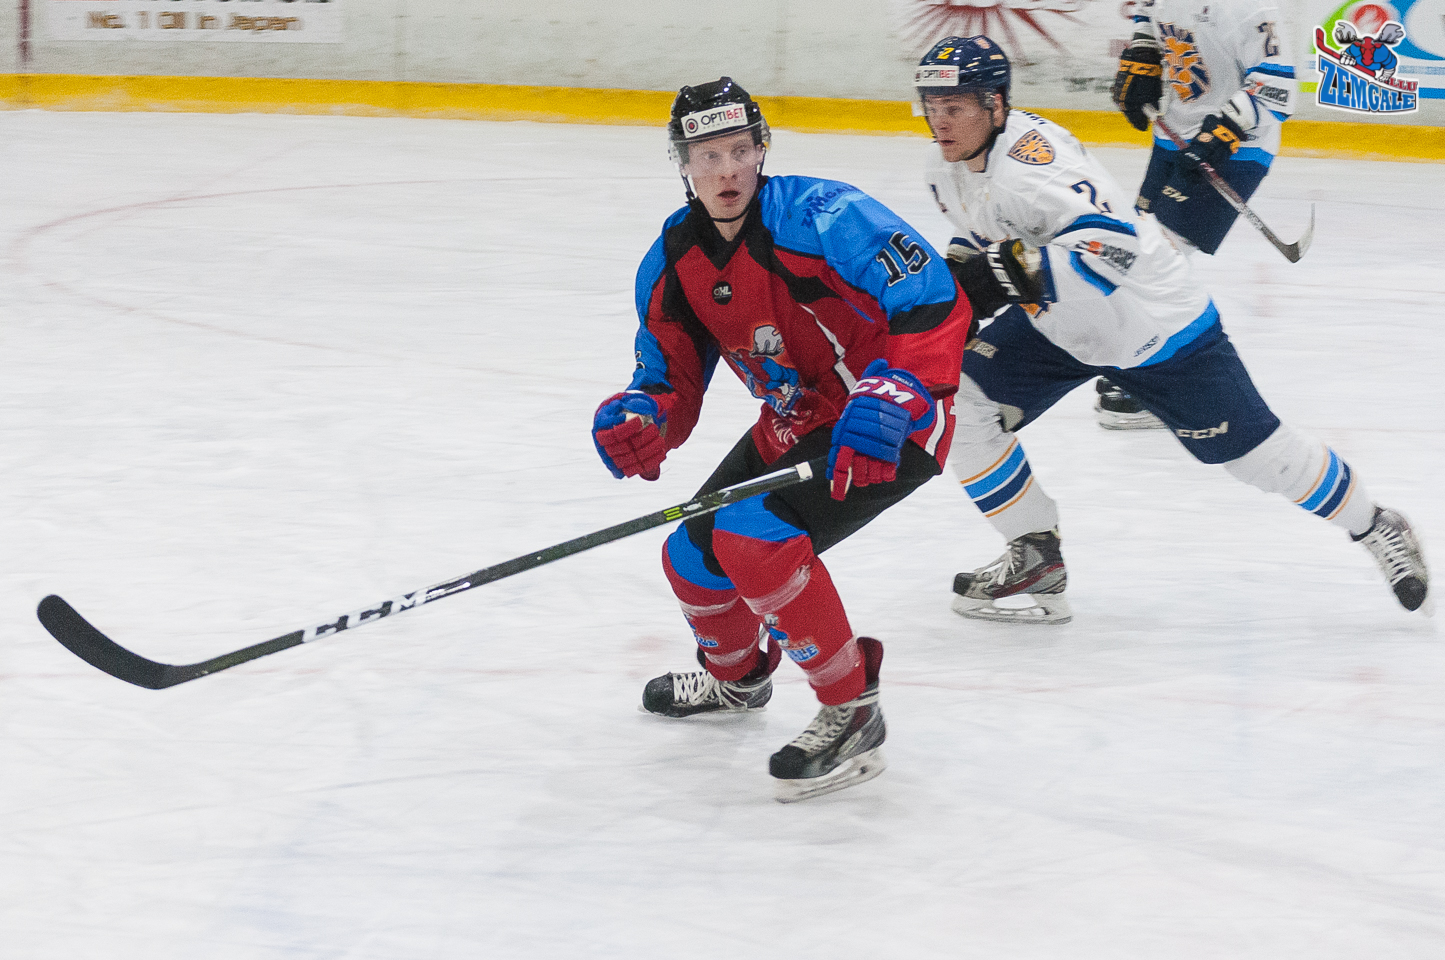 Optibet hokeja līgas regulārā čempionāta spēlē Zemgale/LLU uzvar HS Rīga ar rezultētu 2:0 Jelgavas ledus hallē 2017. gada 25. oktobrī.